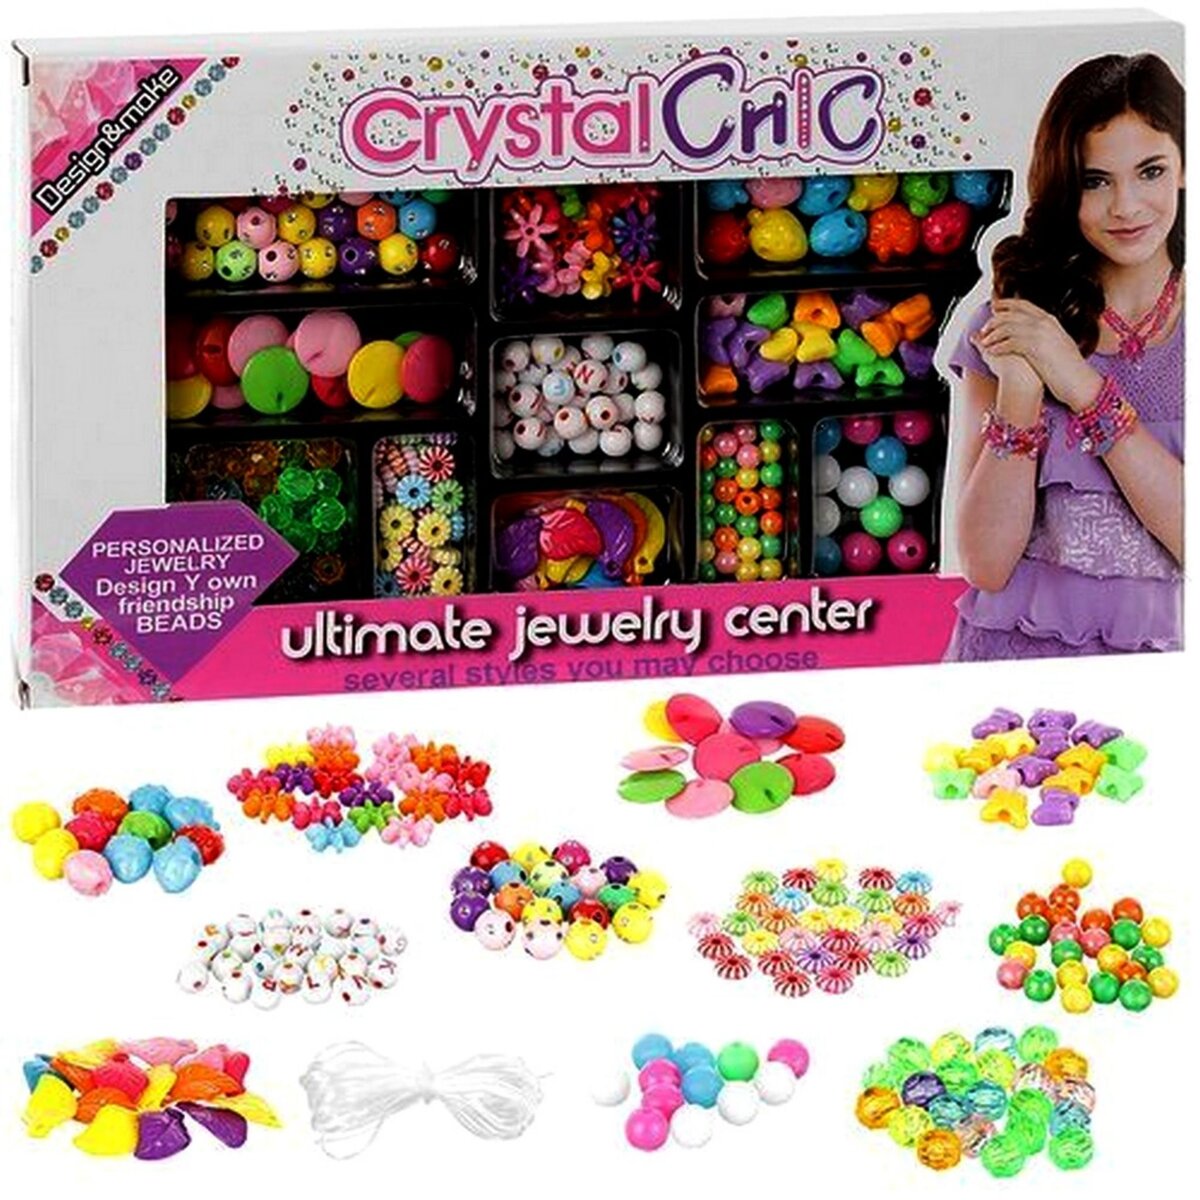 200 Perles multicolores bracelet bijou enfant jouet fille